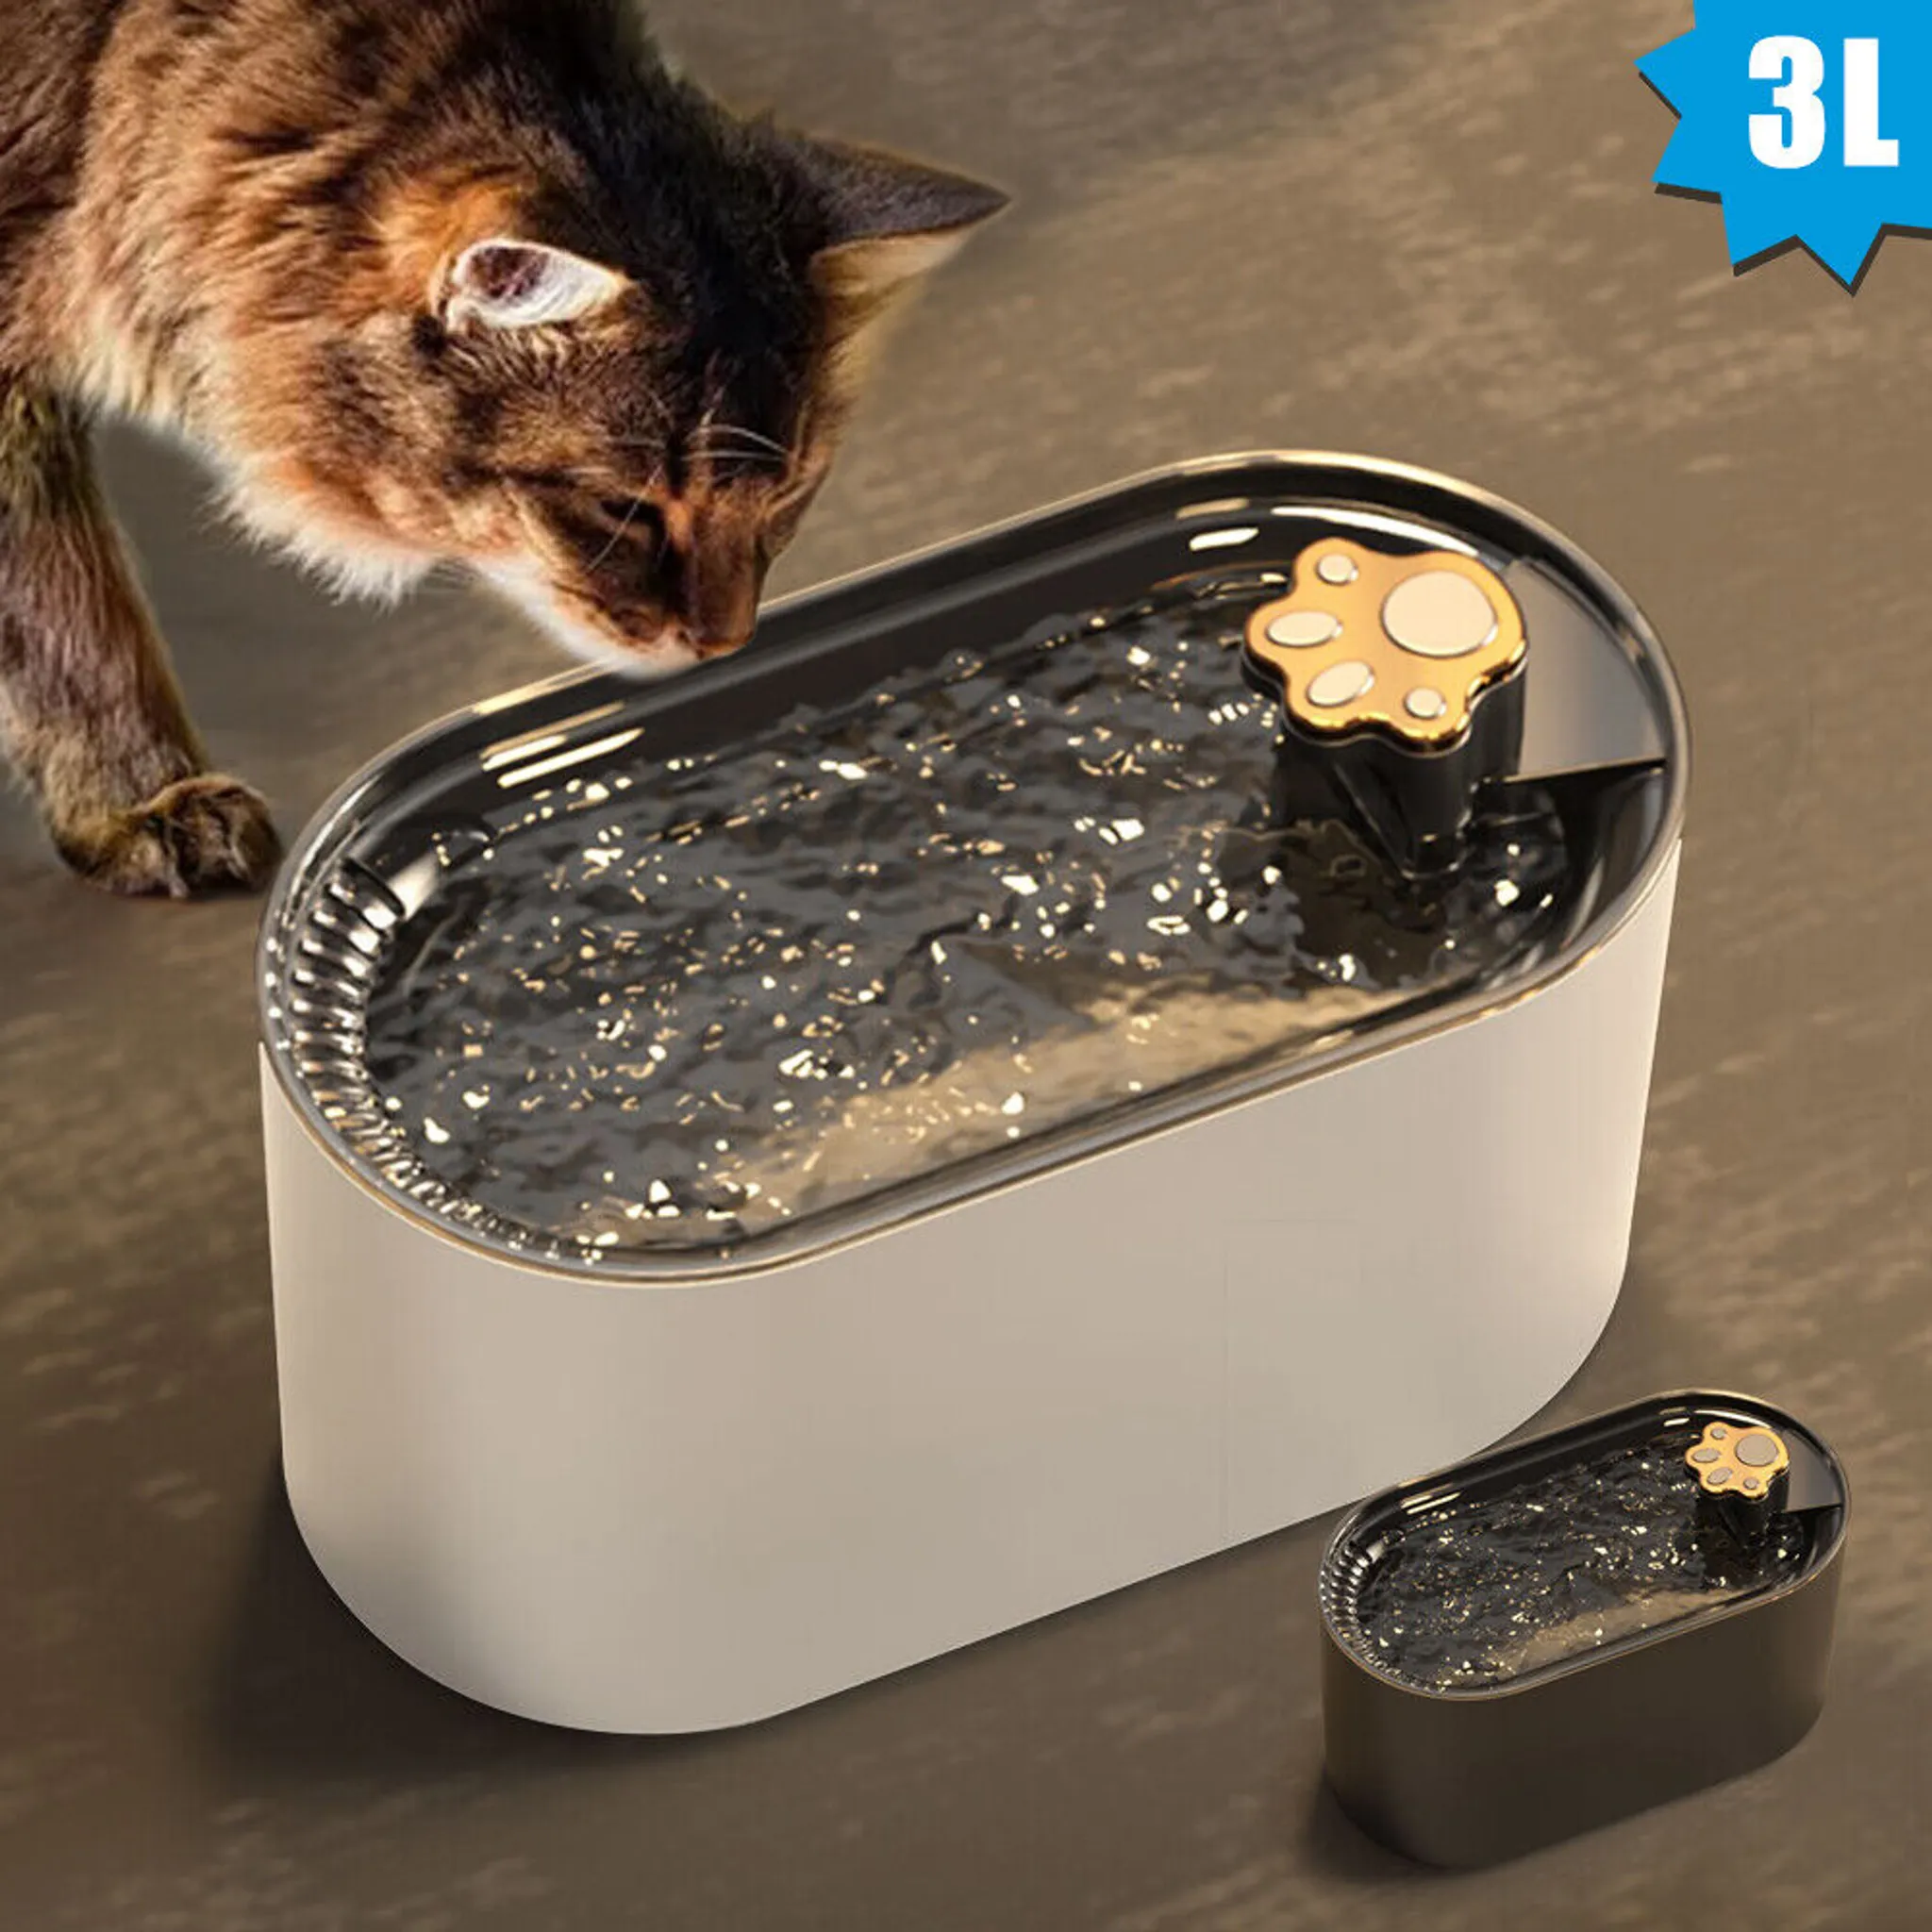 3.2 L Edelstahl Trinkbrunnen für Katze Katzenbrunnen mit Filter Wasser